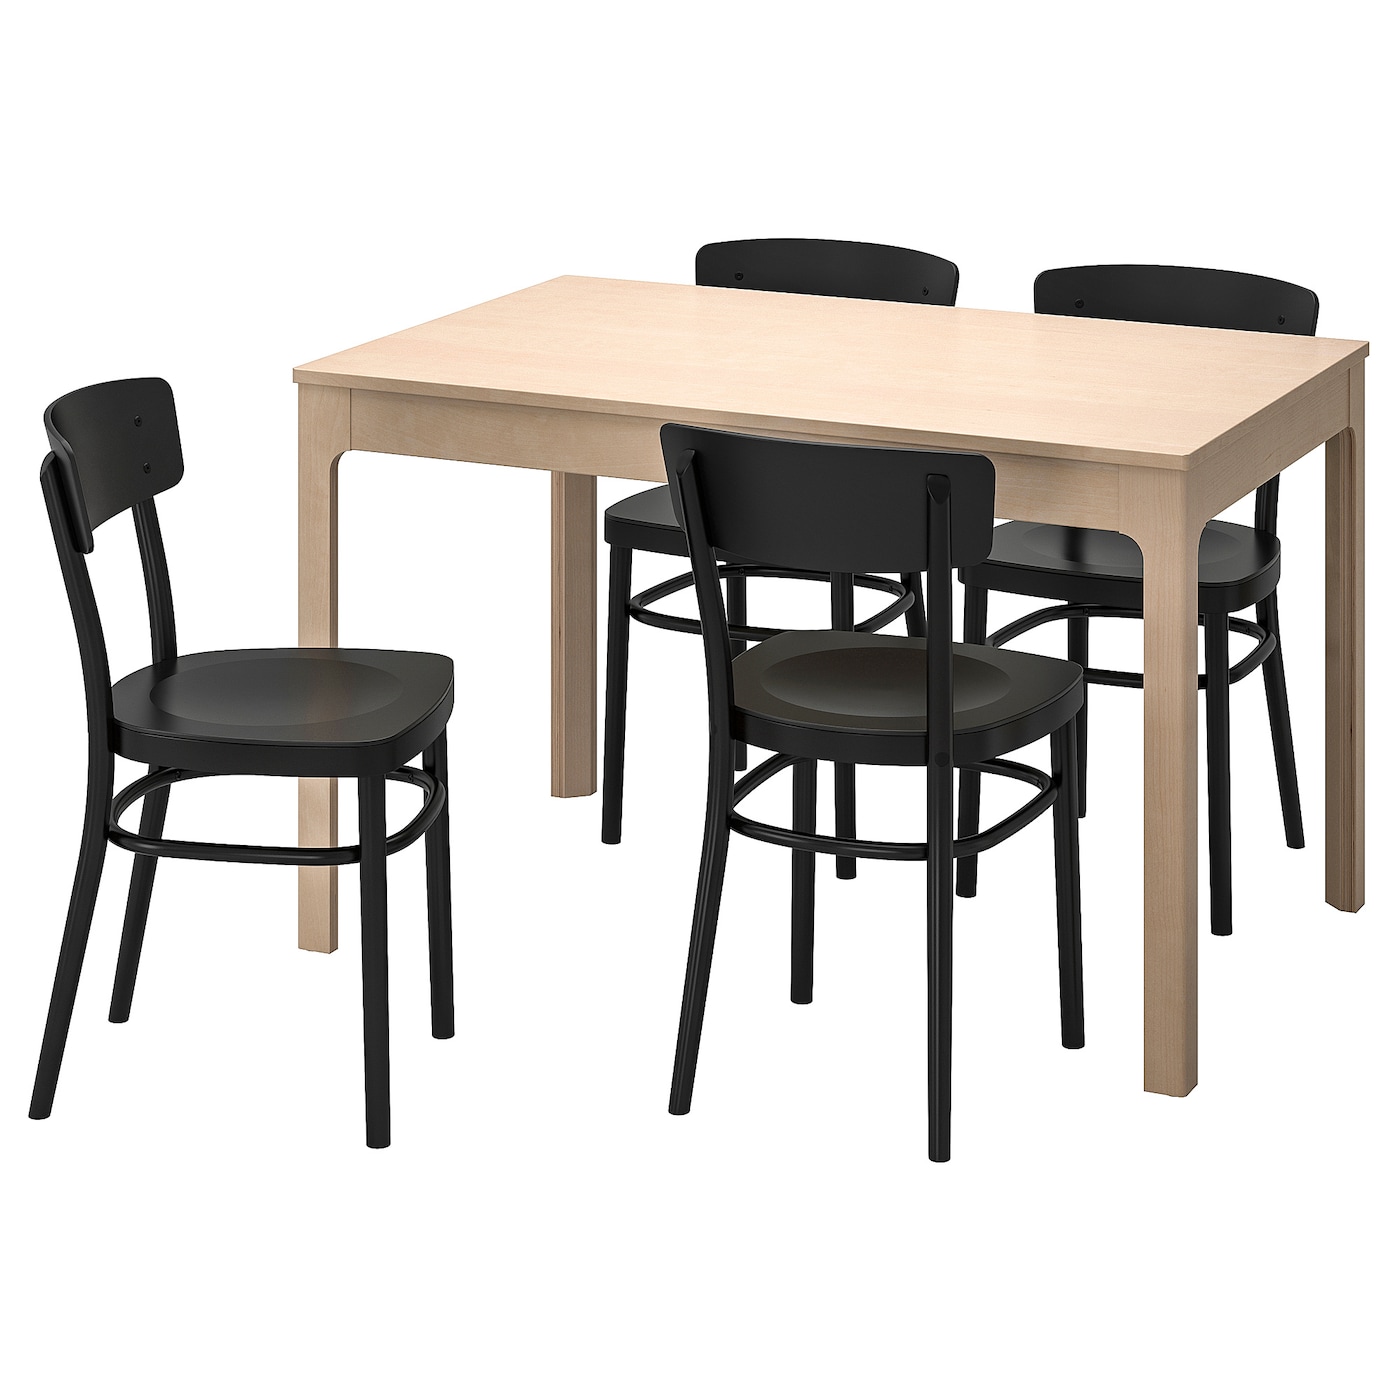 Стол и 4 стула - EKEDALEN / IDOLF  IKEA/ ЭКЕДАЛЕН/ИДОЛЬФ ИКЕА, 180/120 см, бежевый/черный